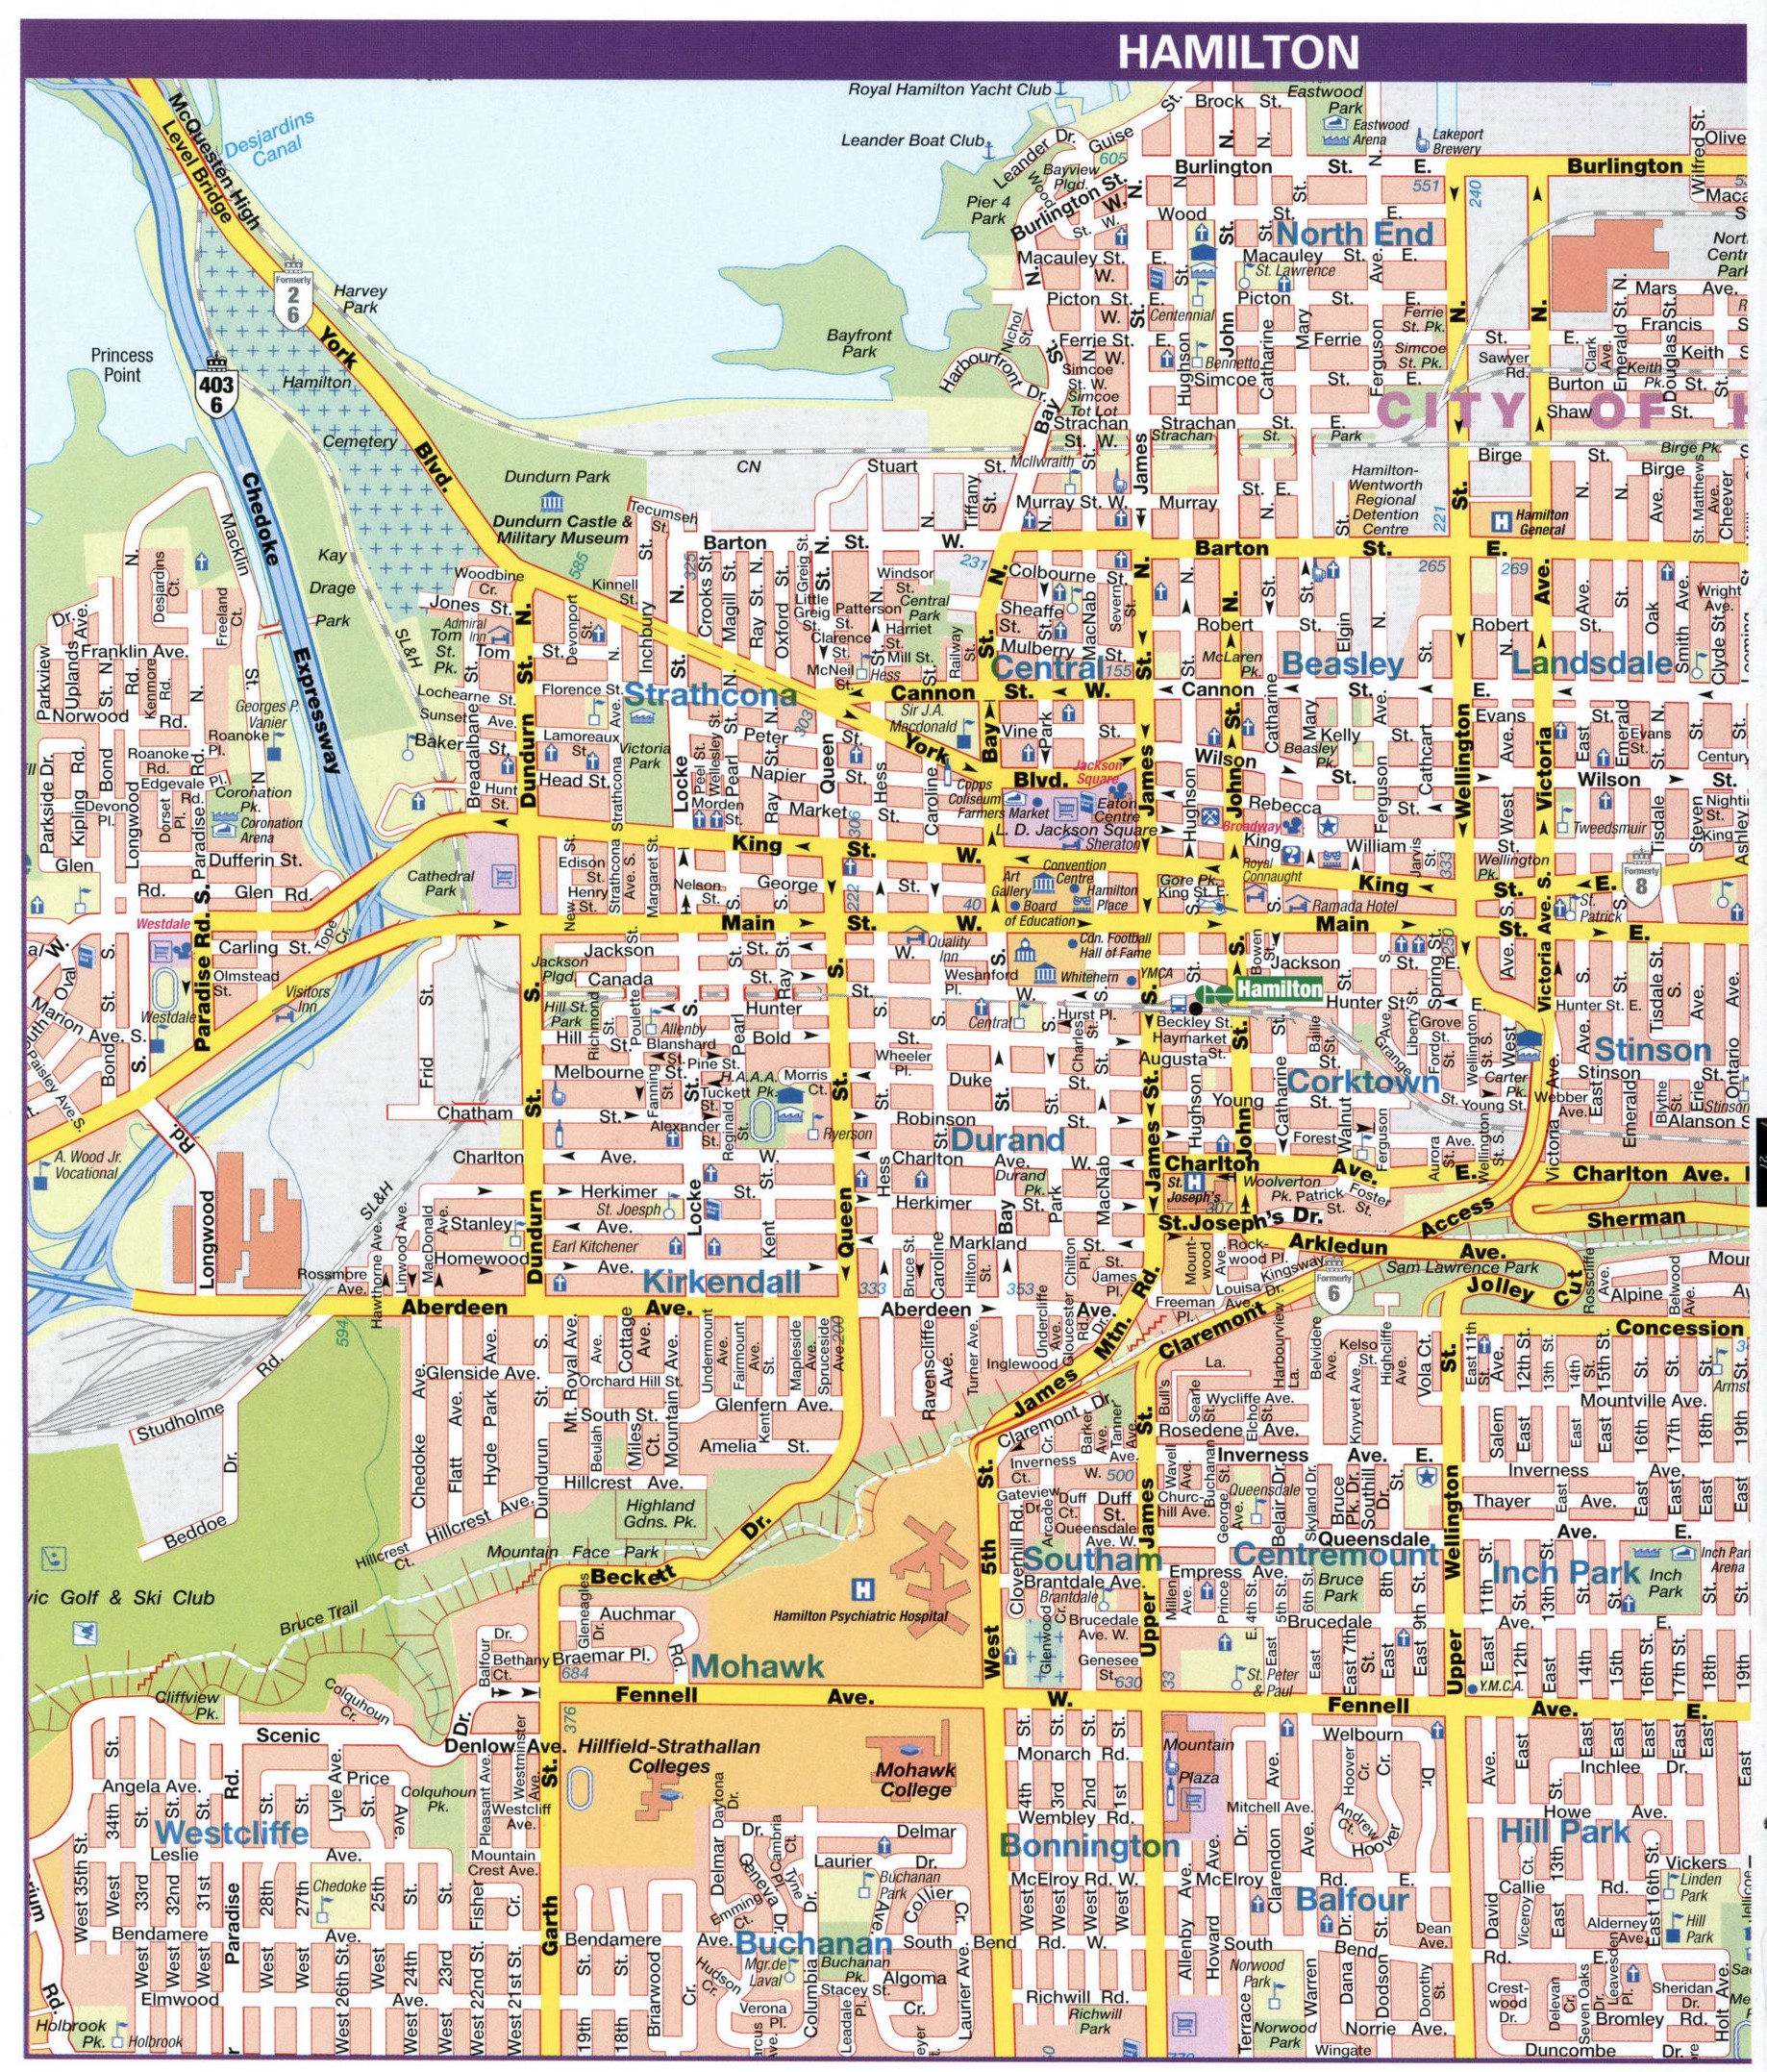 Hamilton city map